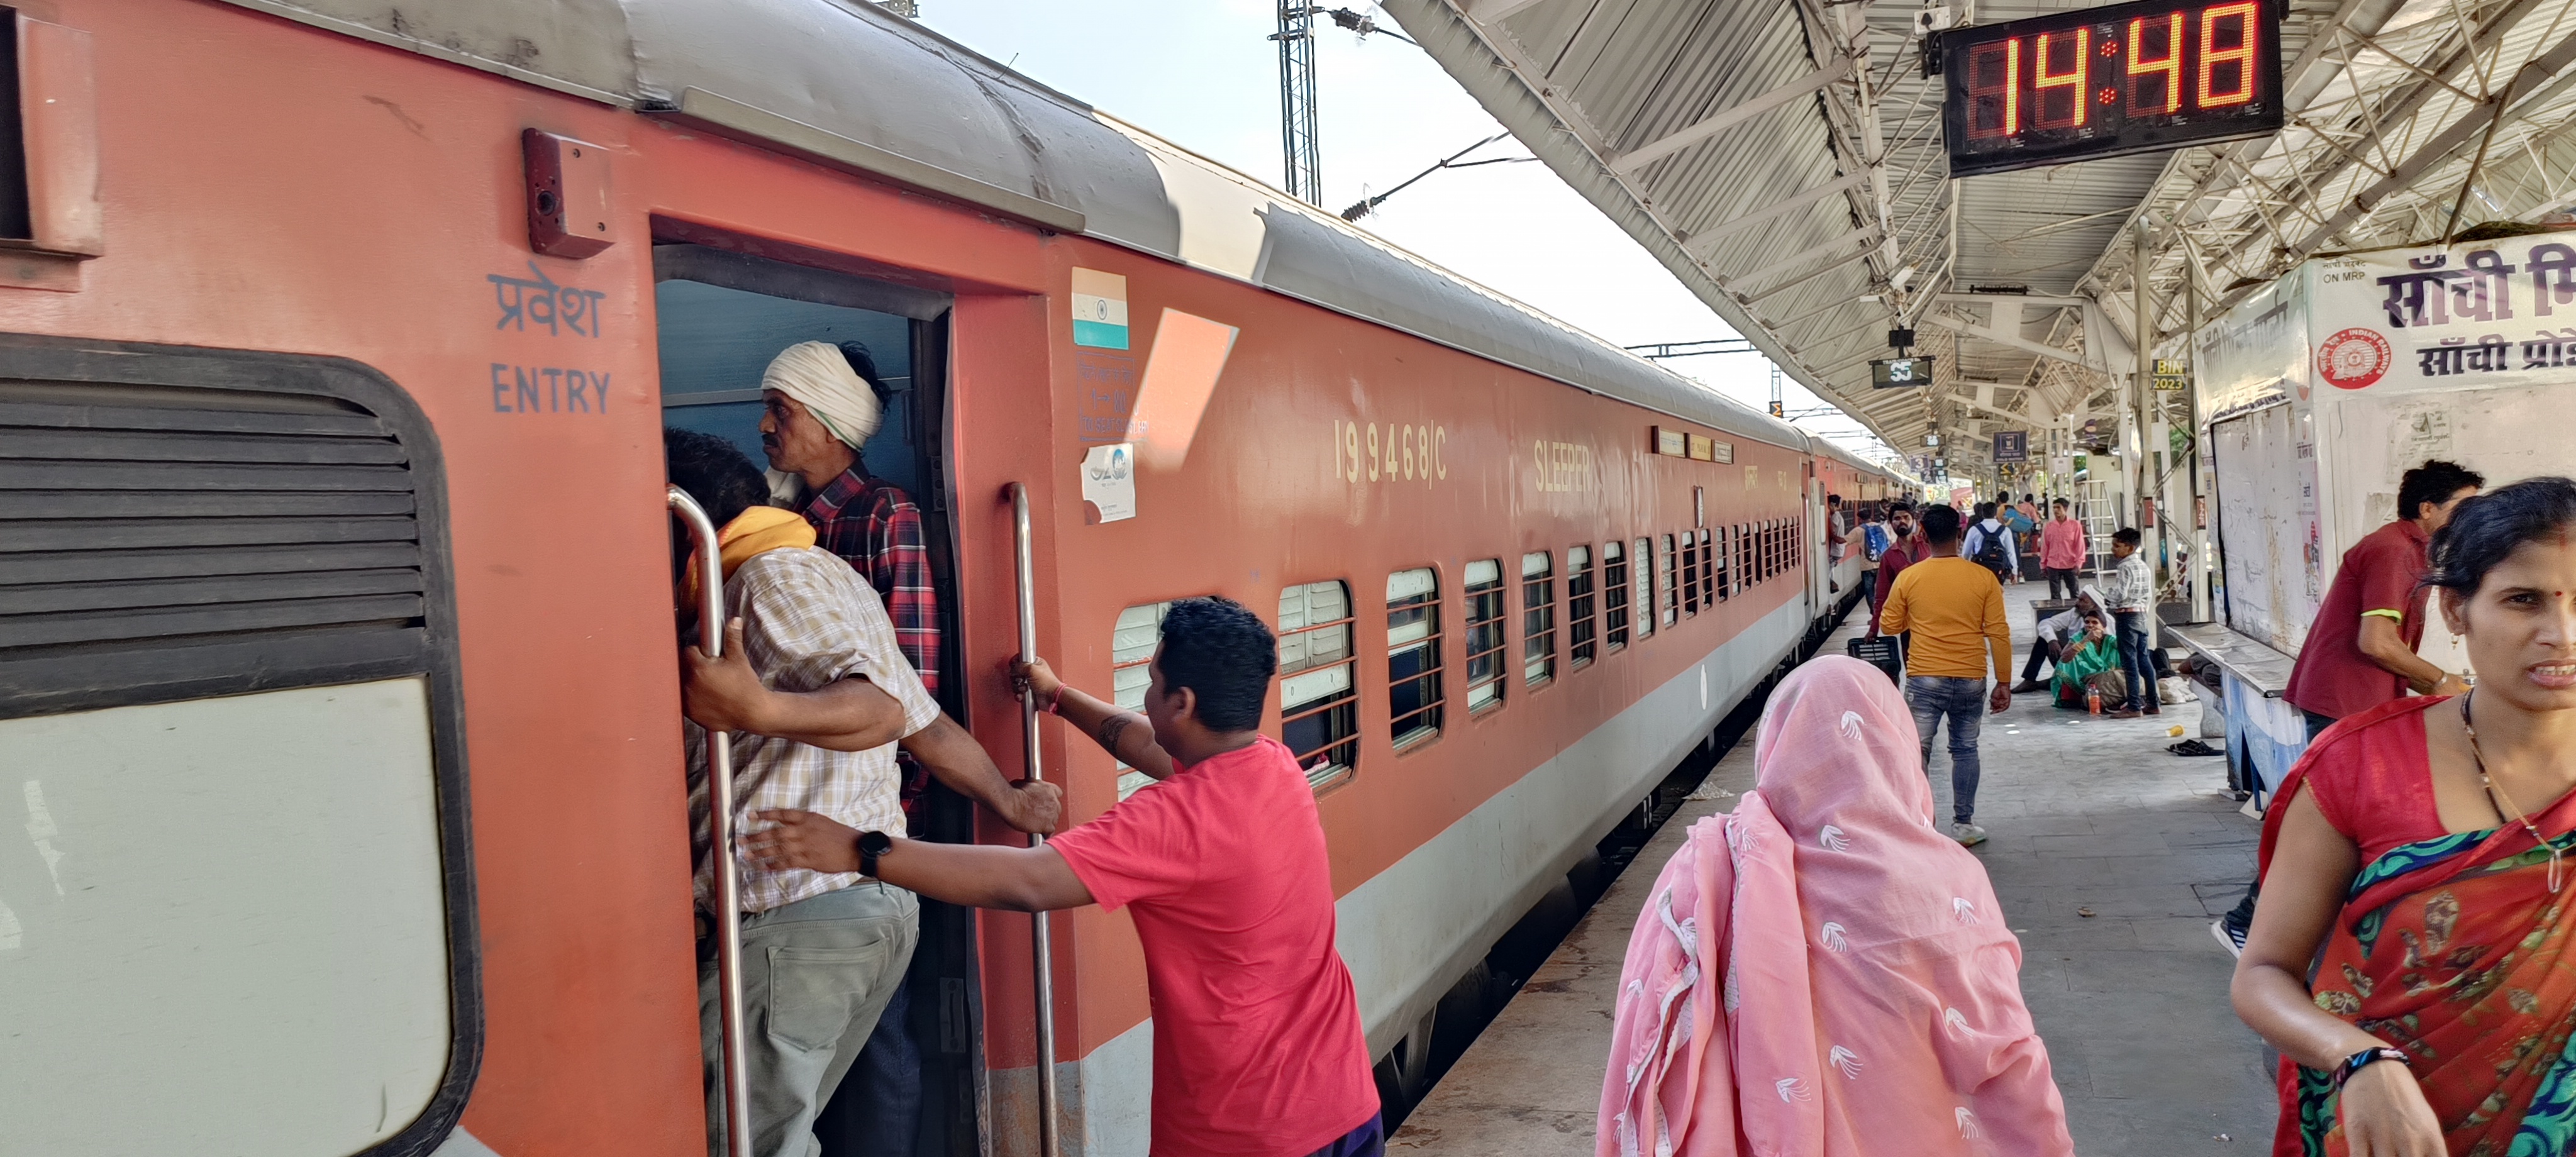 लापरवाही: चलती ट्रेन में सवार हो रहे यात्री, हादसों के बाद भी नहीं हो रहीं
जागरूक